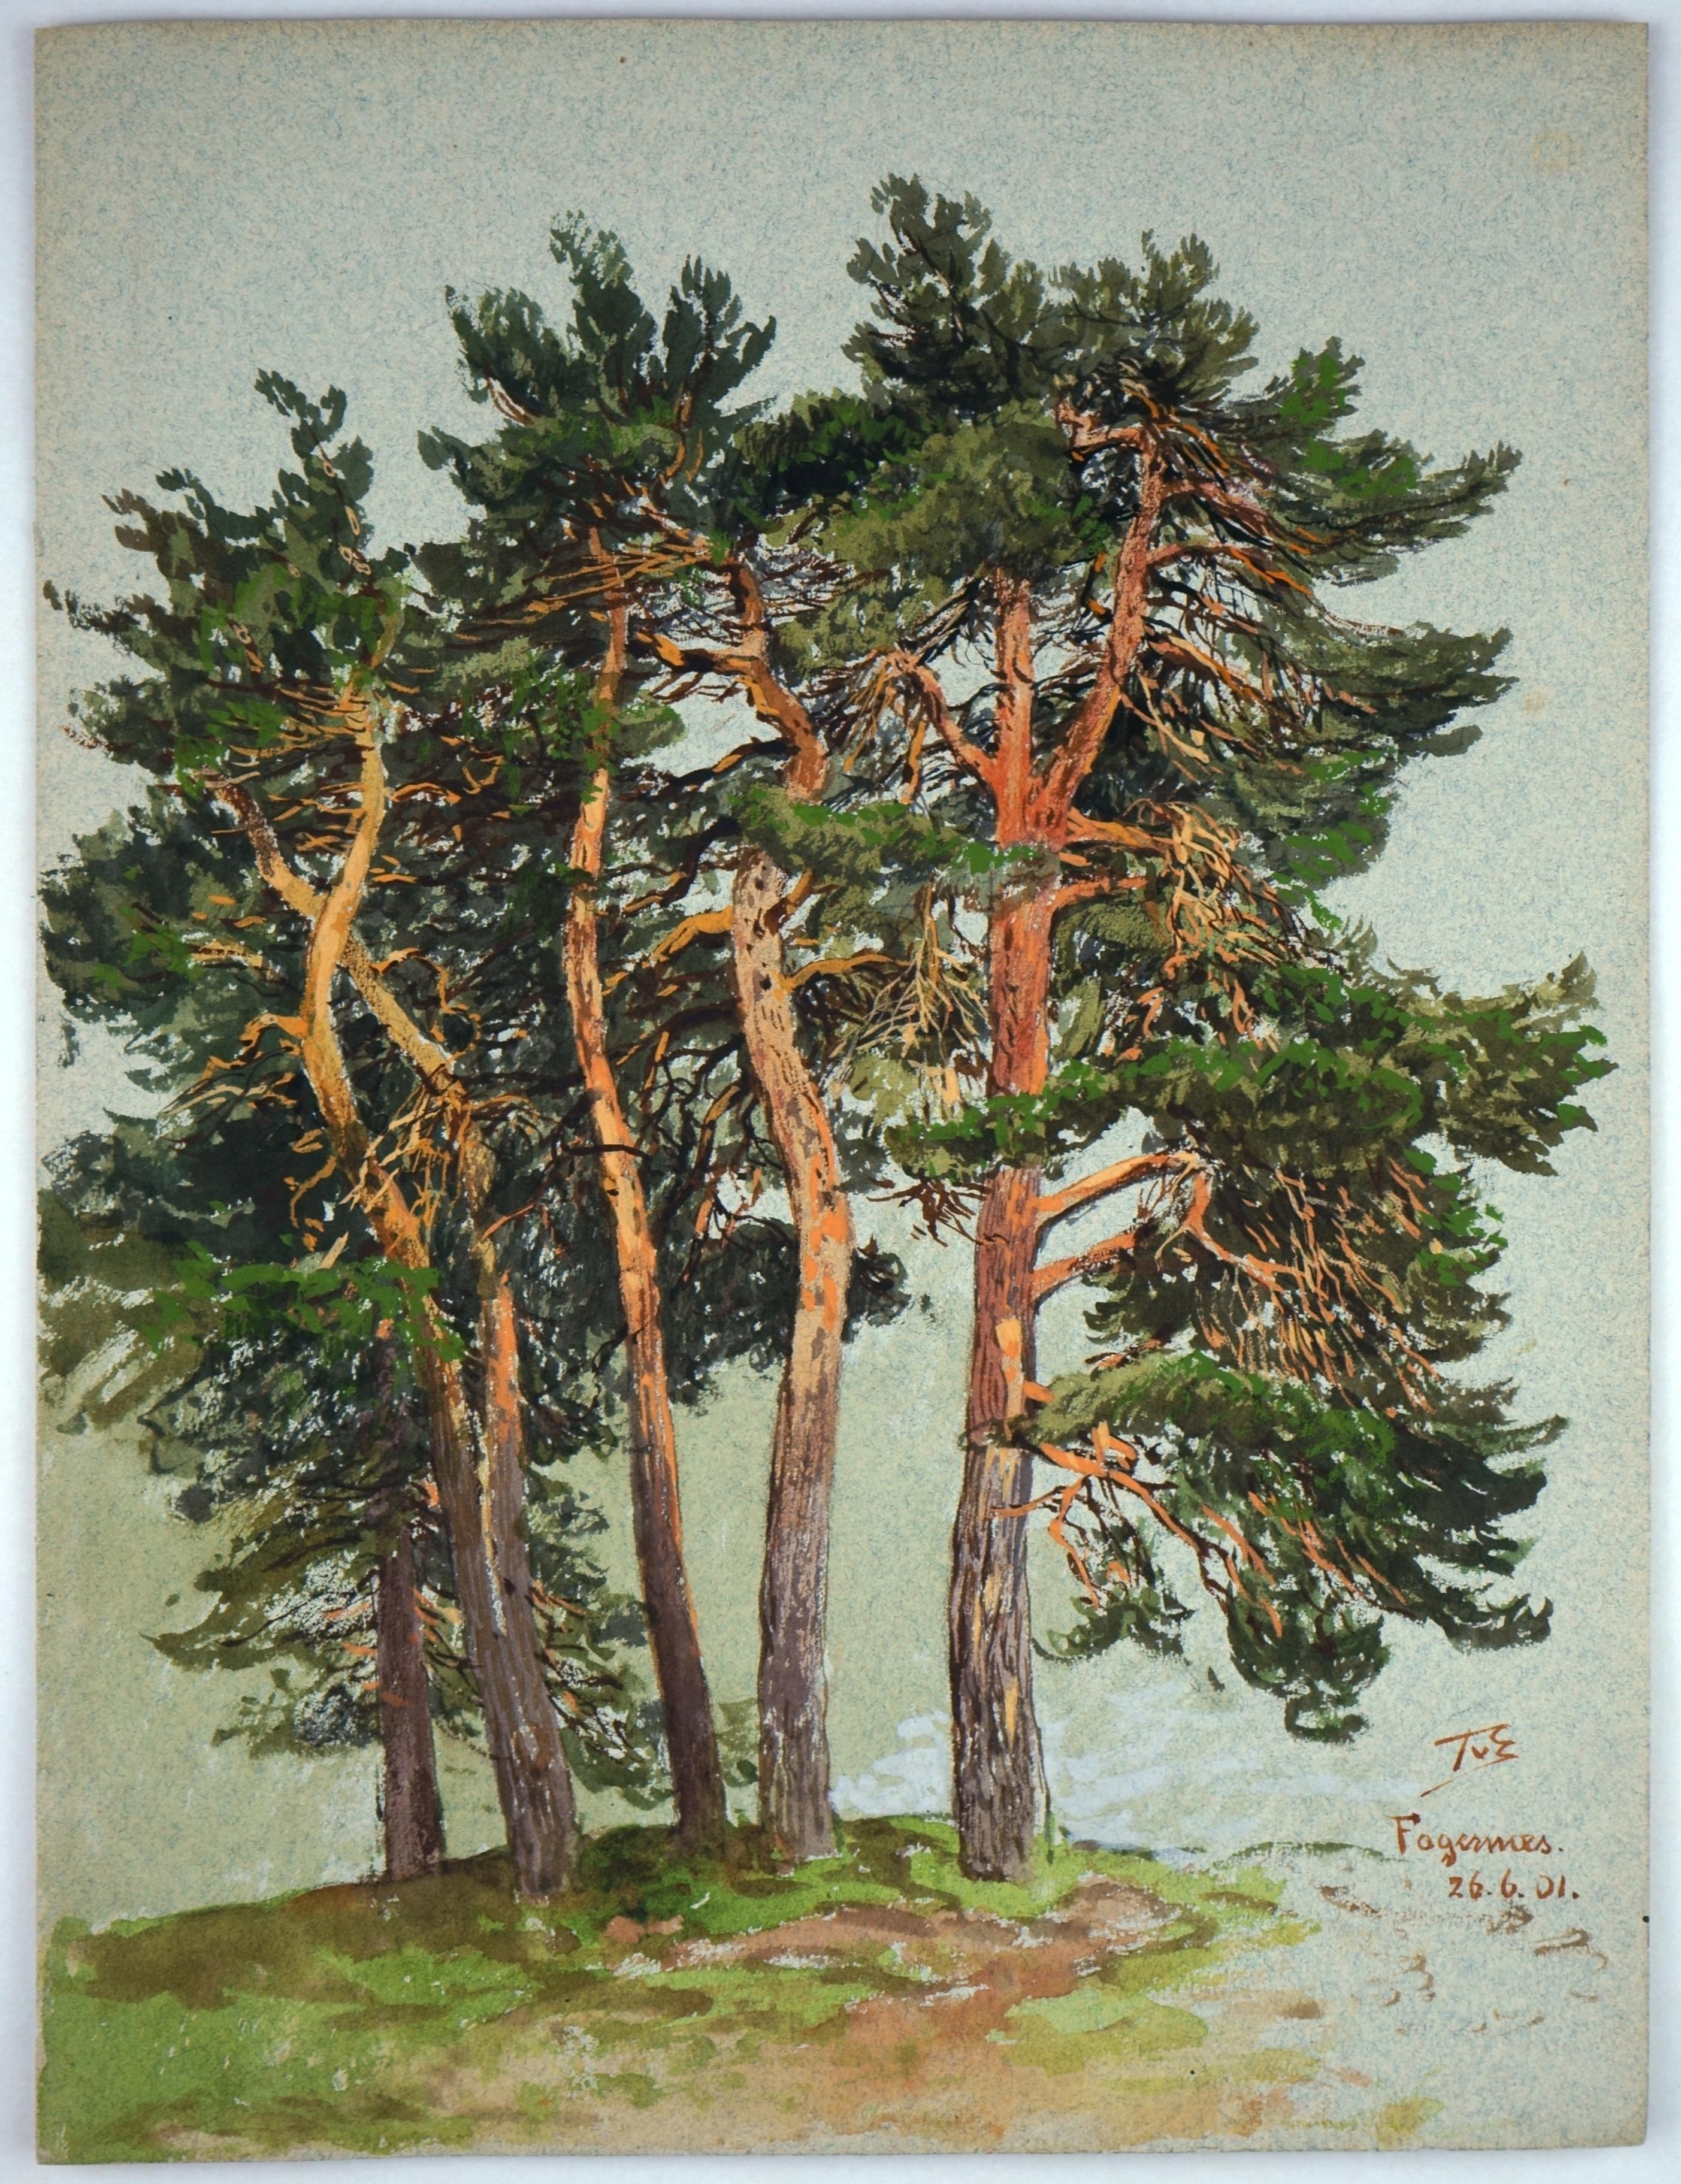 Themistokles von Eckenbrecher Figurative Art – Norwegisches Kiefernholzbaumholz – Der innere Glanz der Bäume –